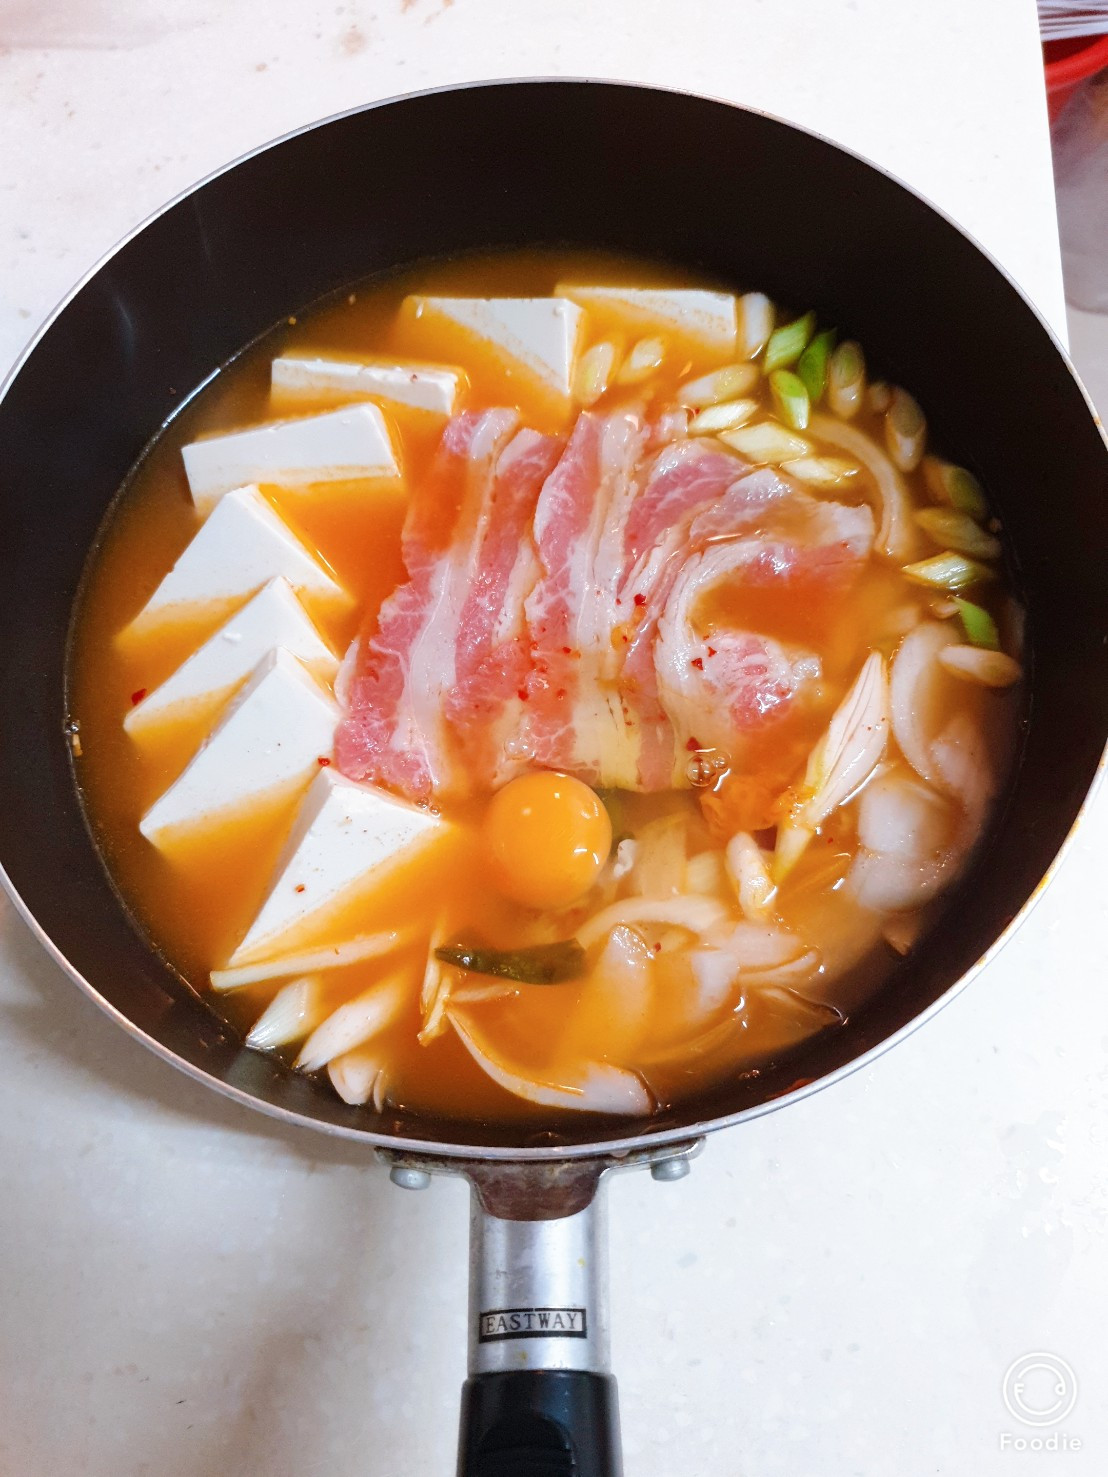 韓式泡菜鍋소고기 김치찌개